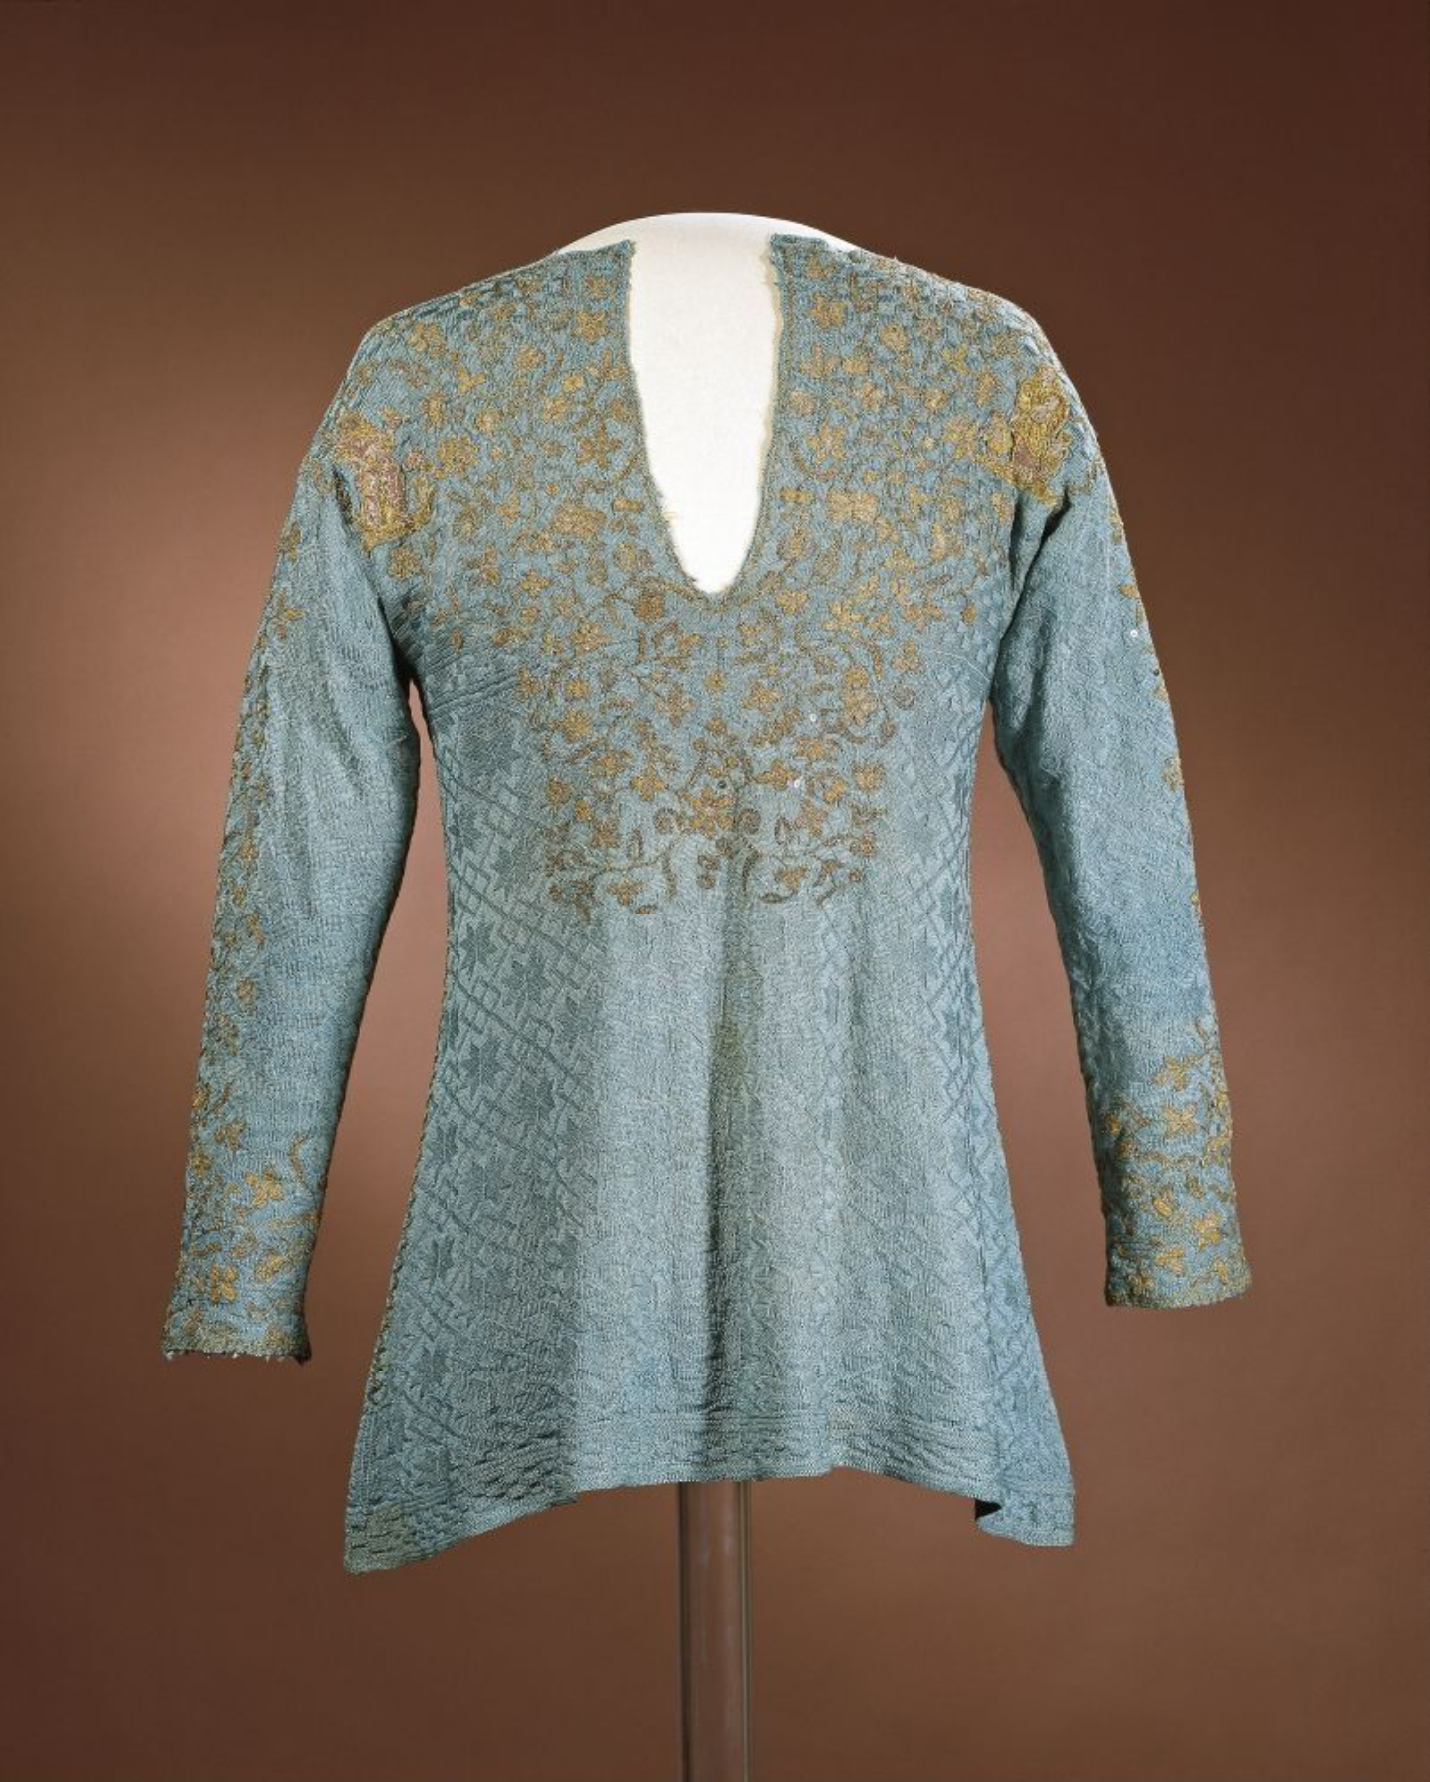 Strikket trøye fra 1600-tallet